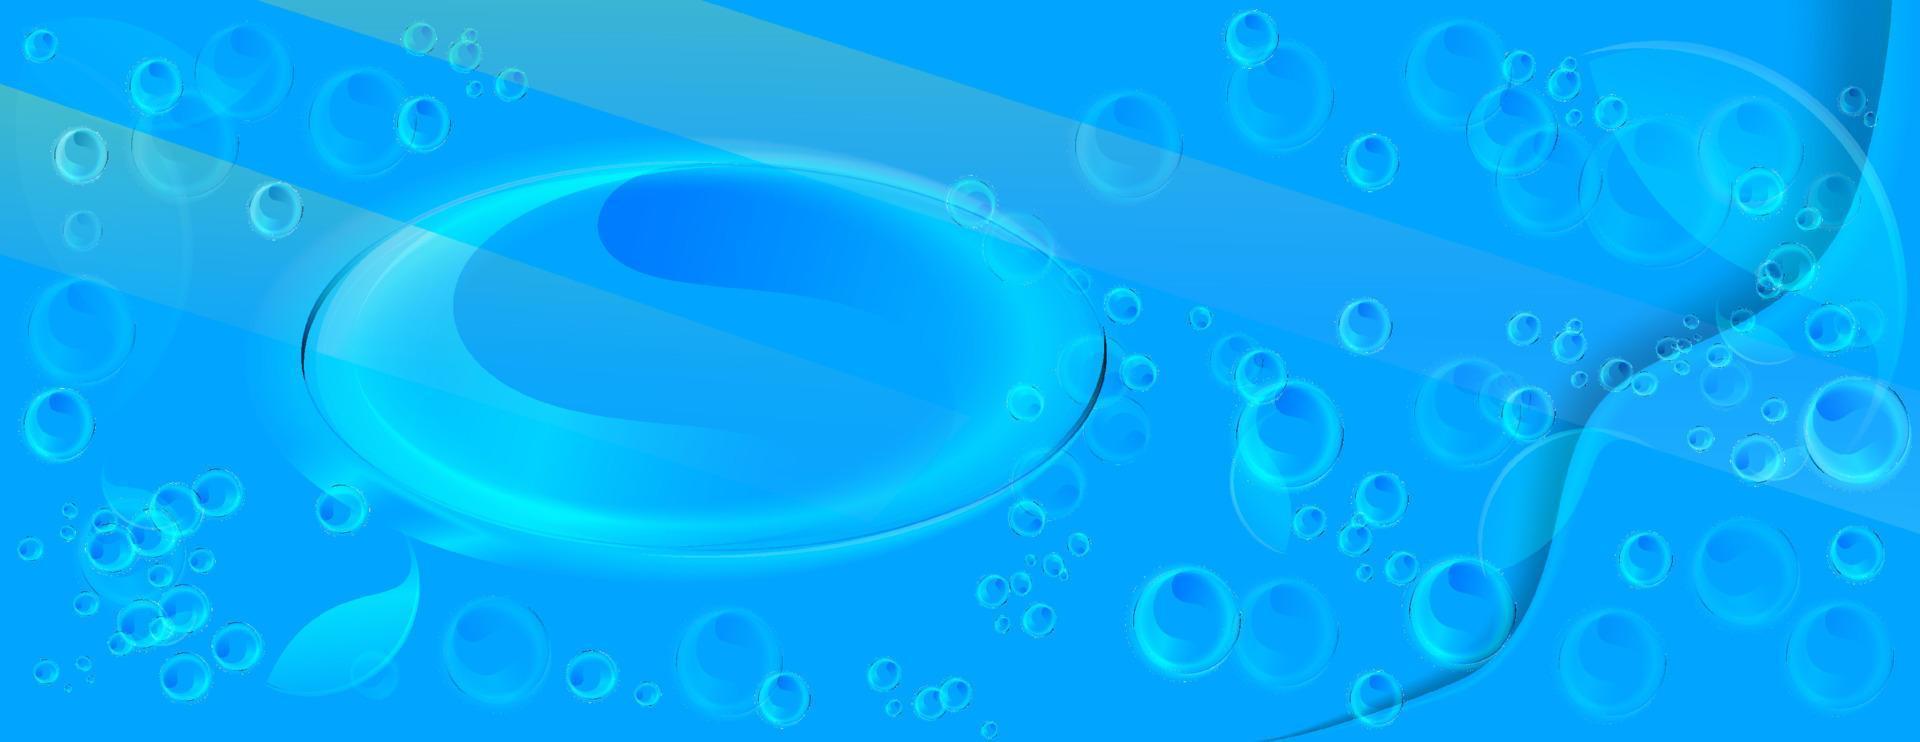 etichetta dell'acqua con molte bolle, design leggero, illustrazione vettoriale su sfondo blu